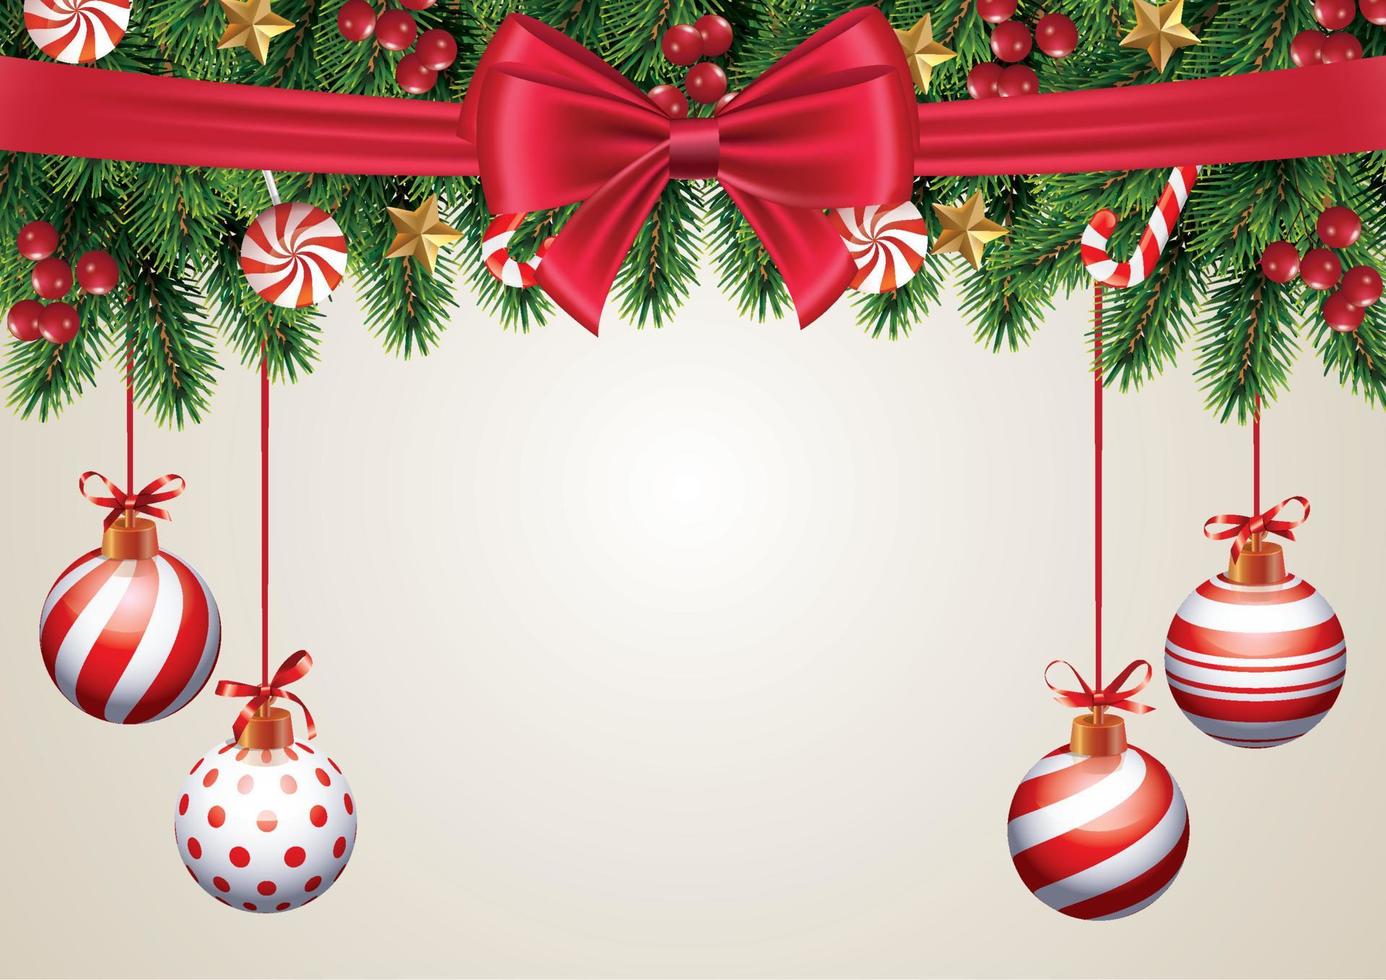 julhelgbakgrundssammansättning, julhälsningskort med hängande bollar och rött band grangranprydnader vektor